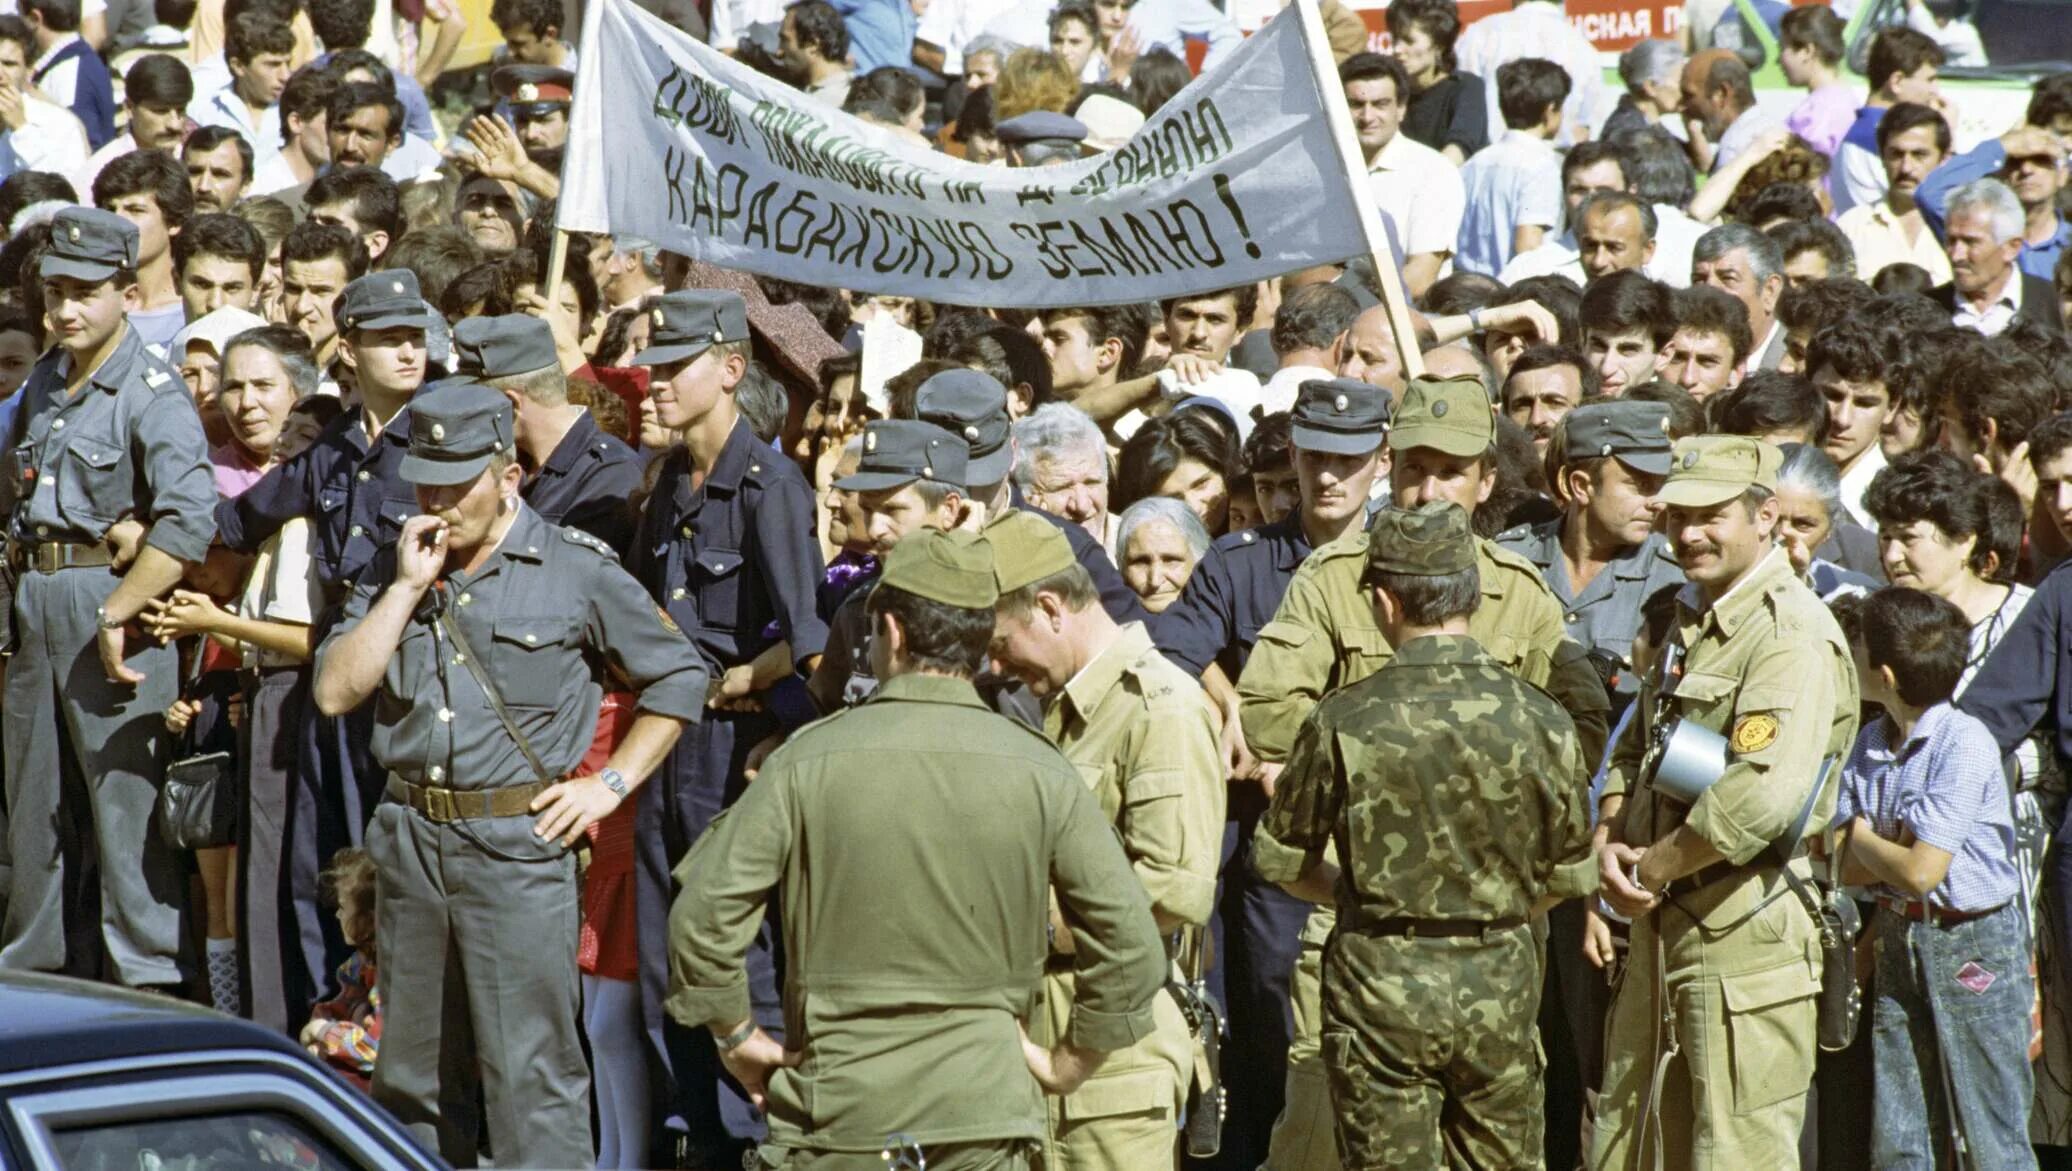 Национальные конфликты в ссср были. Нагорный Карабах 1990. Митинг в Степанакерте 1988. Карабахский конфликт степанокерт1988.